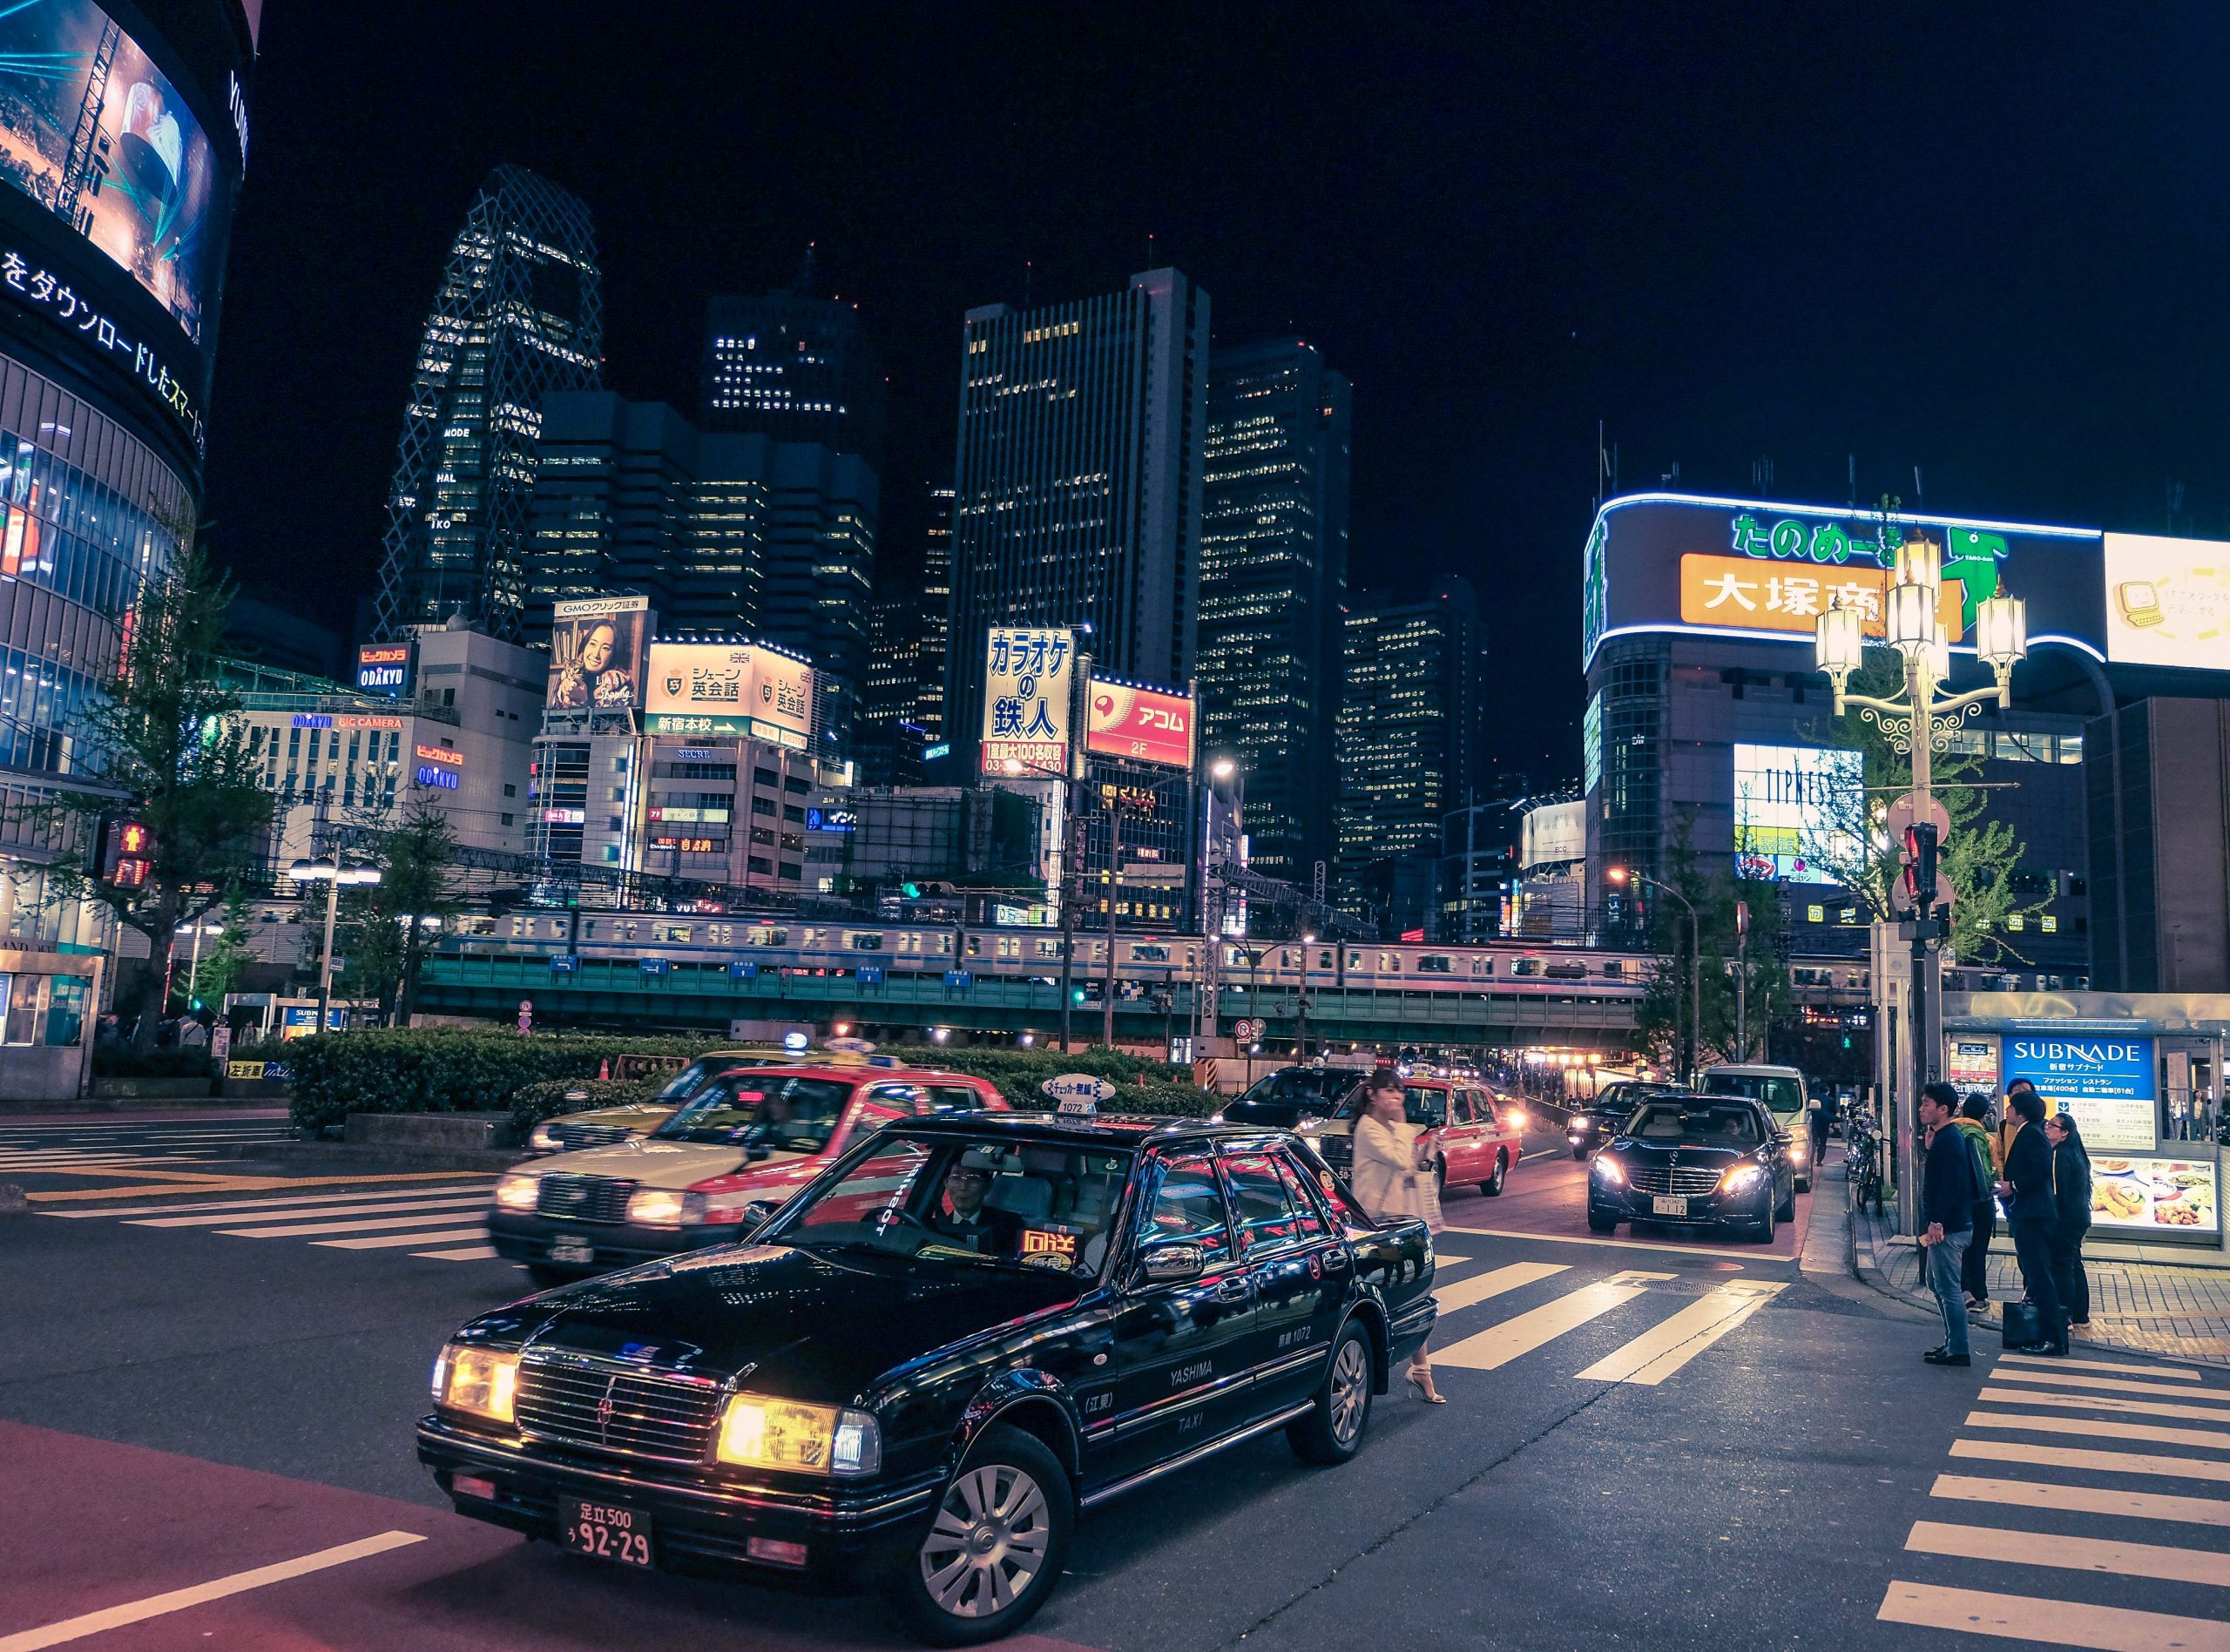 Cabs night time Shinjuku